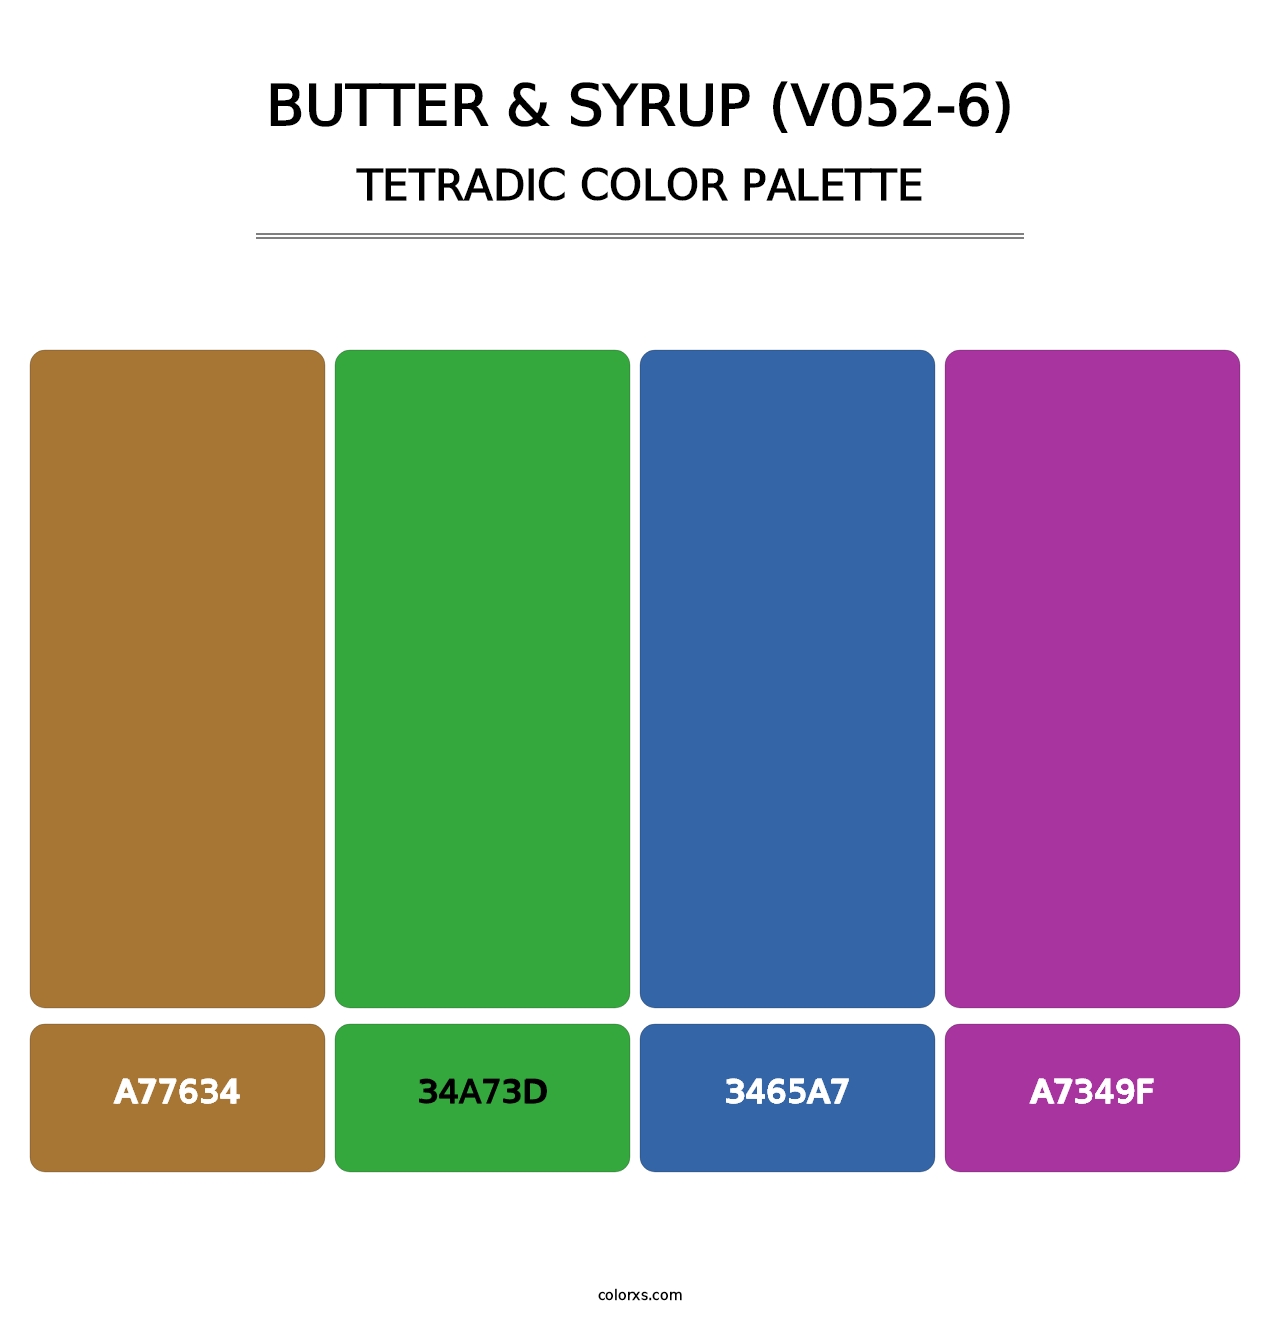 Butter & Syrup (V052-6) - Tetradic Color Palette